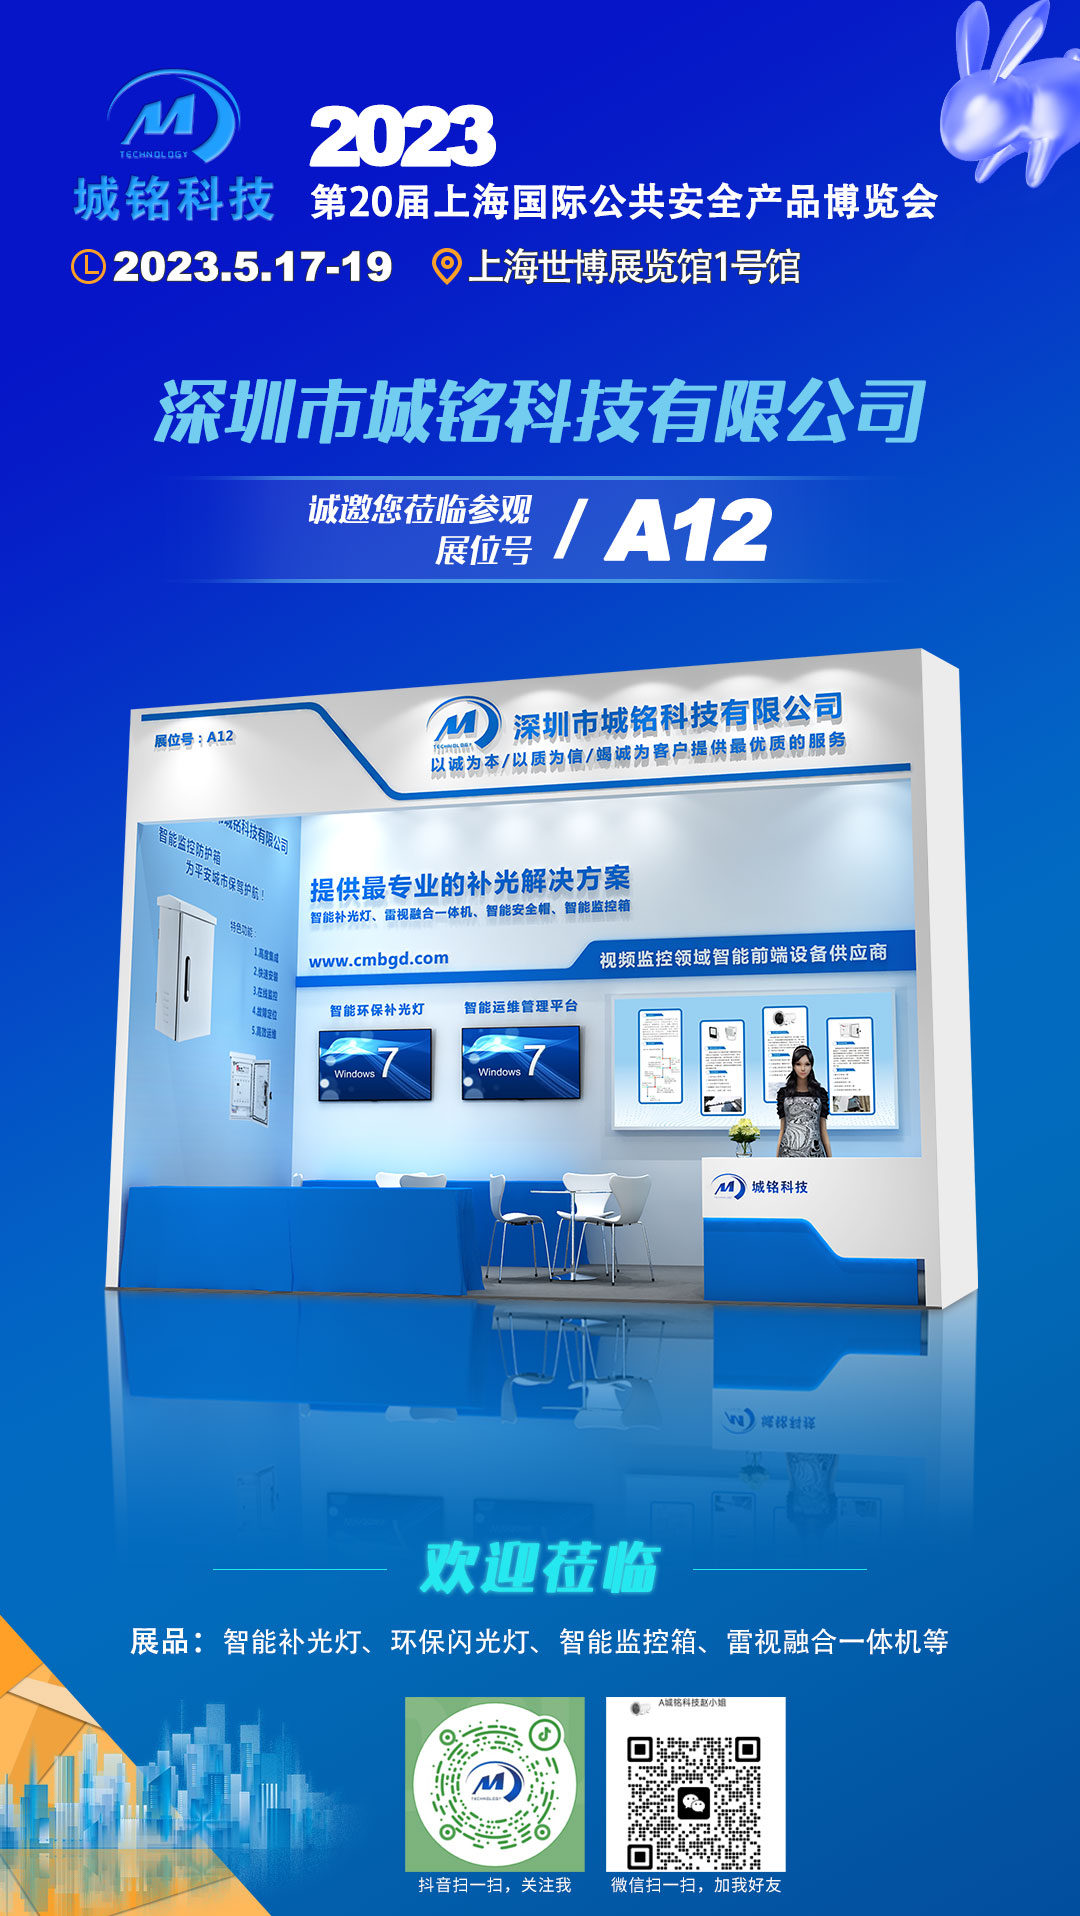 2023年第二十届上海国际公共安全产品博览会-城铭科技邀您相约A12展位